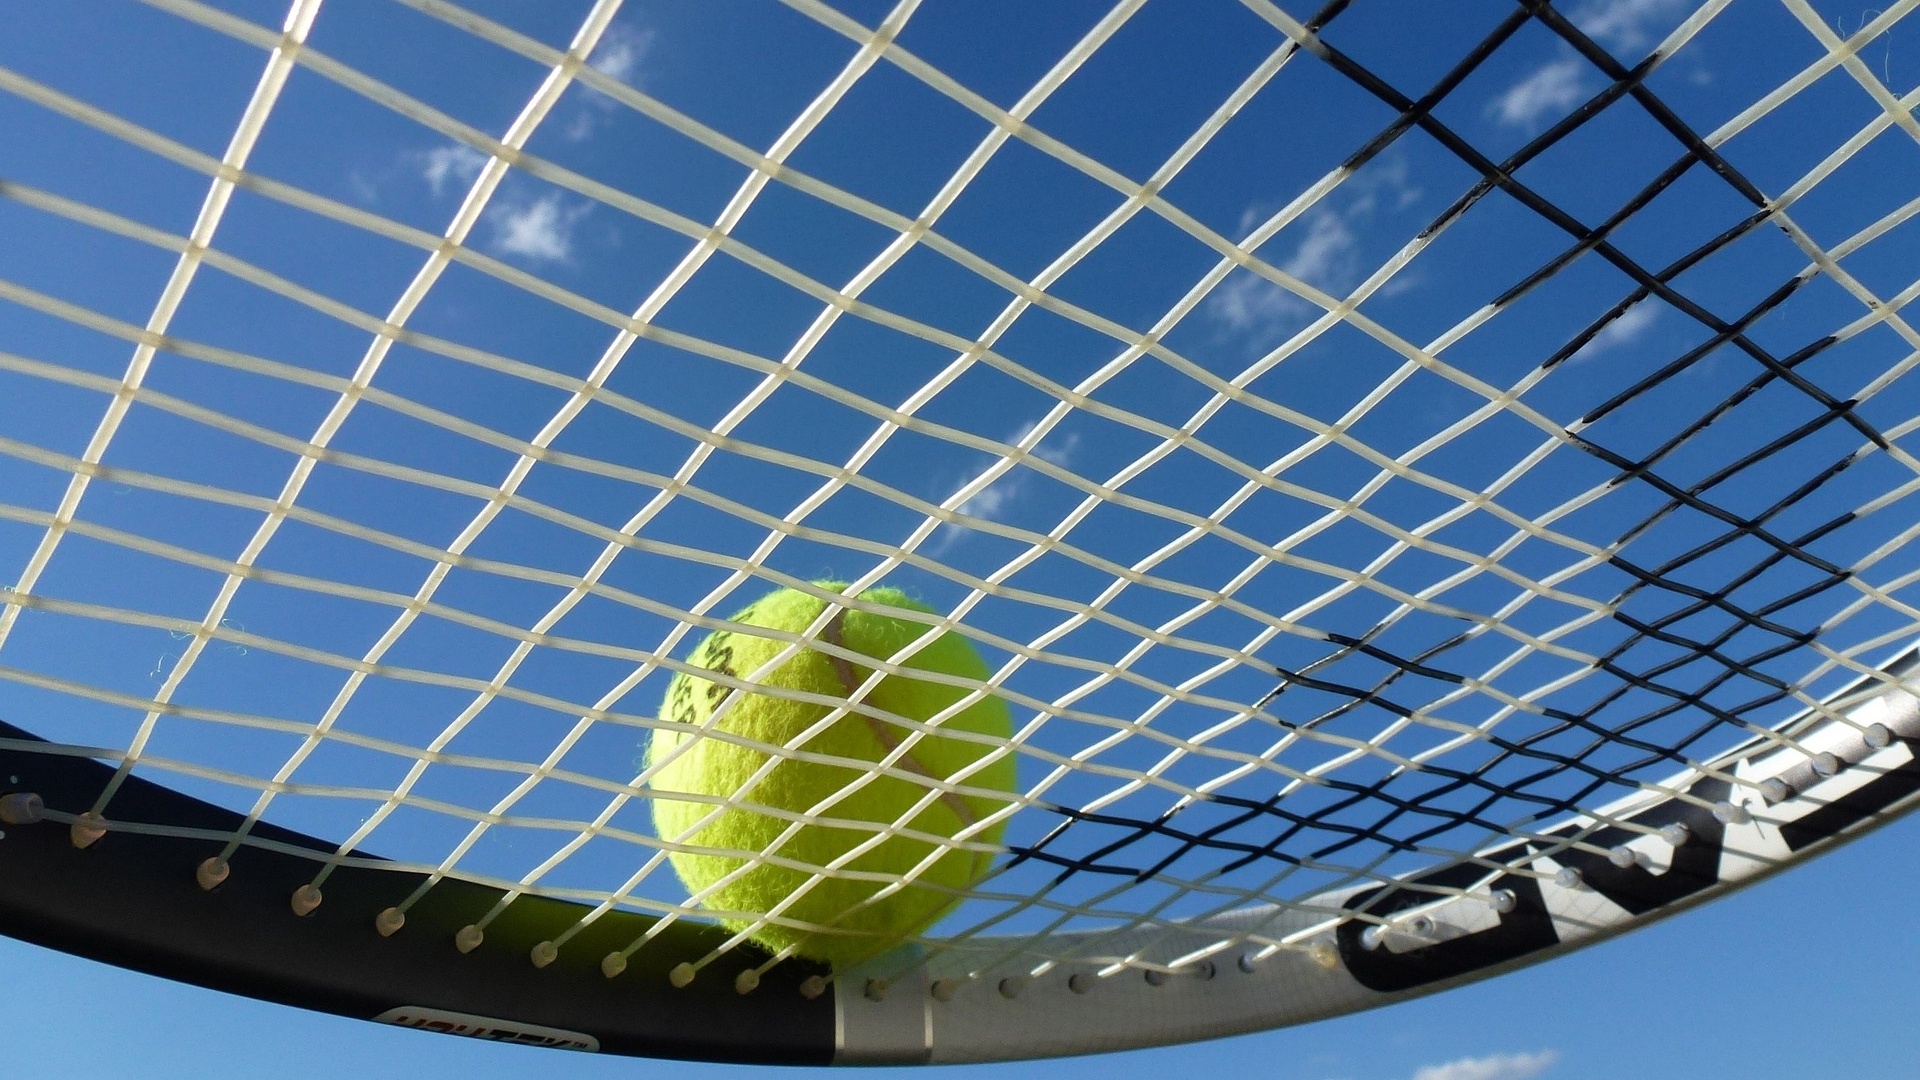 W Szczecinie powstaje amatorska firmowa liga tenisowa. W premierowej edycji ma wystąpić od 8 do 12 drużyn w mieszanych składach.